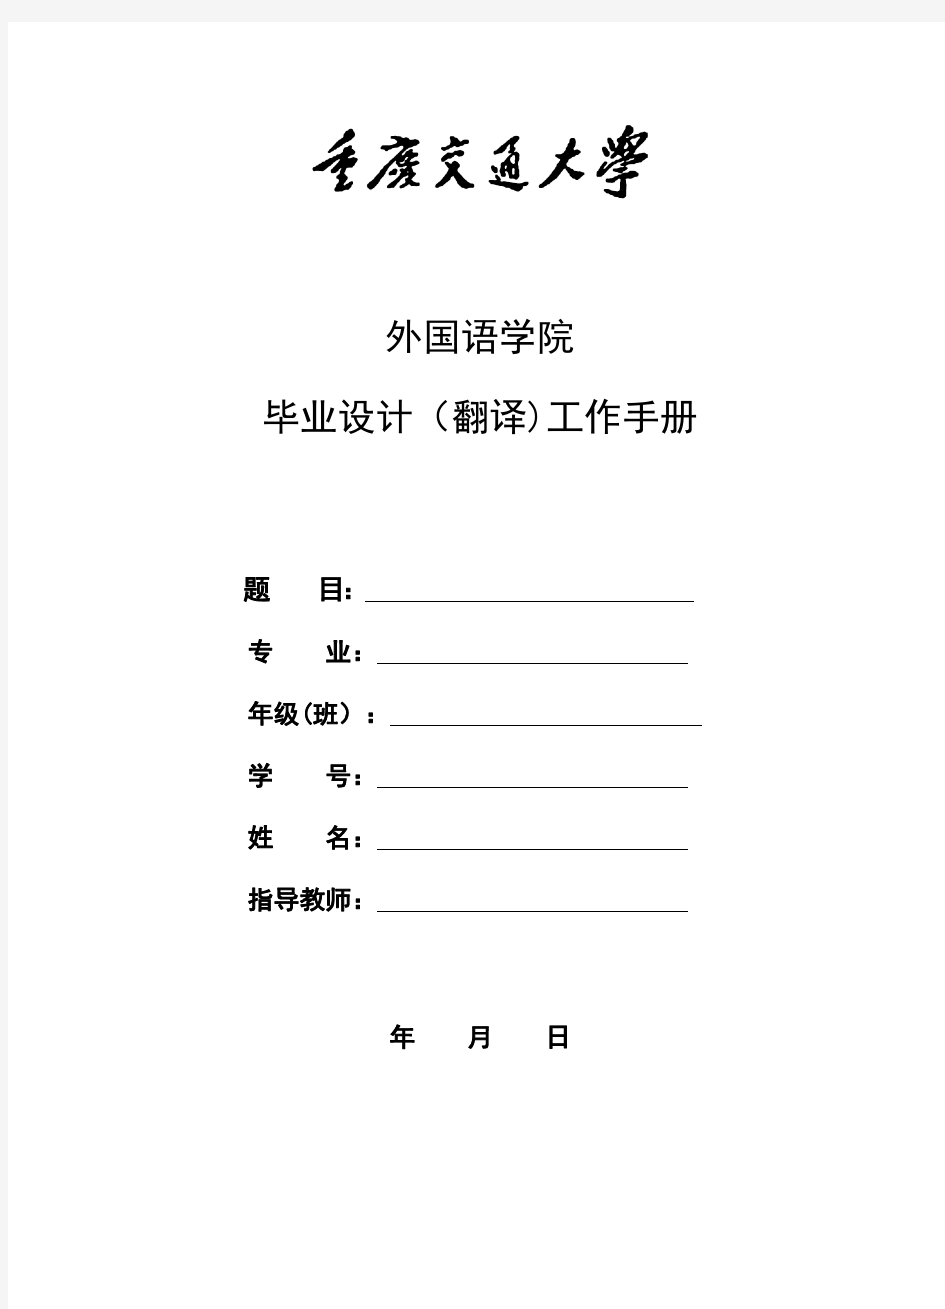 重庆交通大学毕业设计(翻译)工作手册